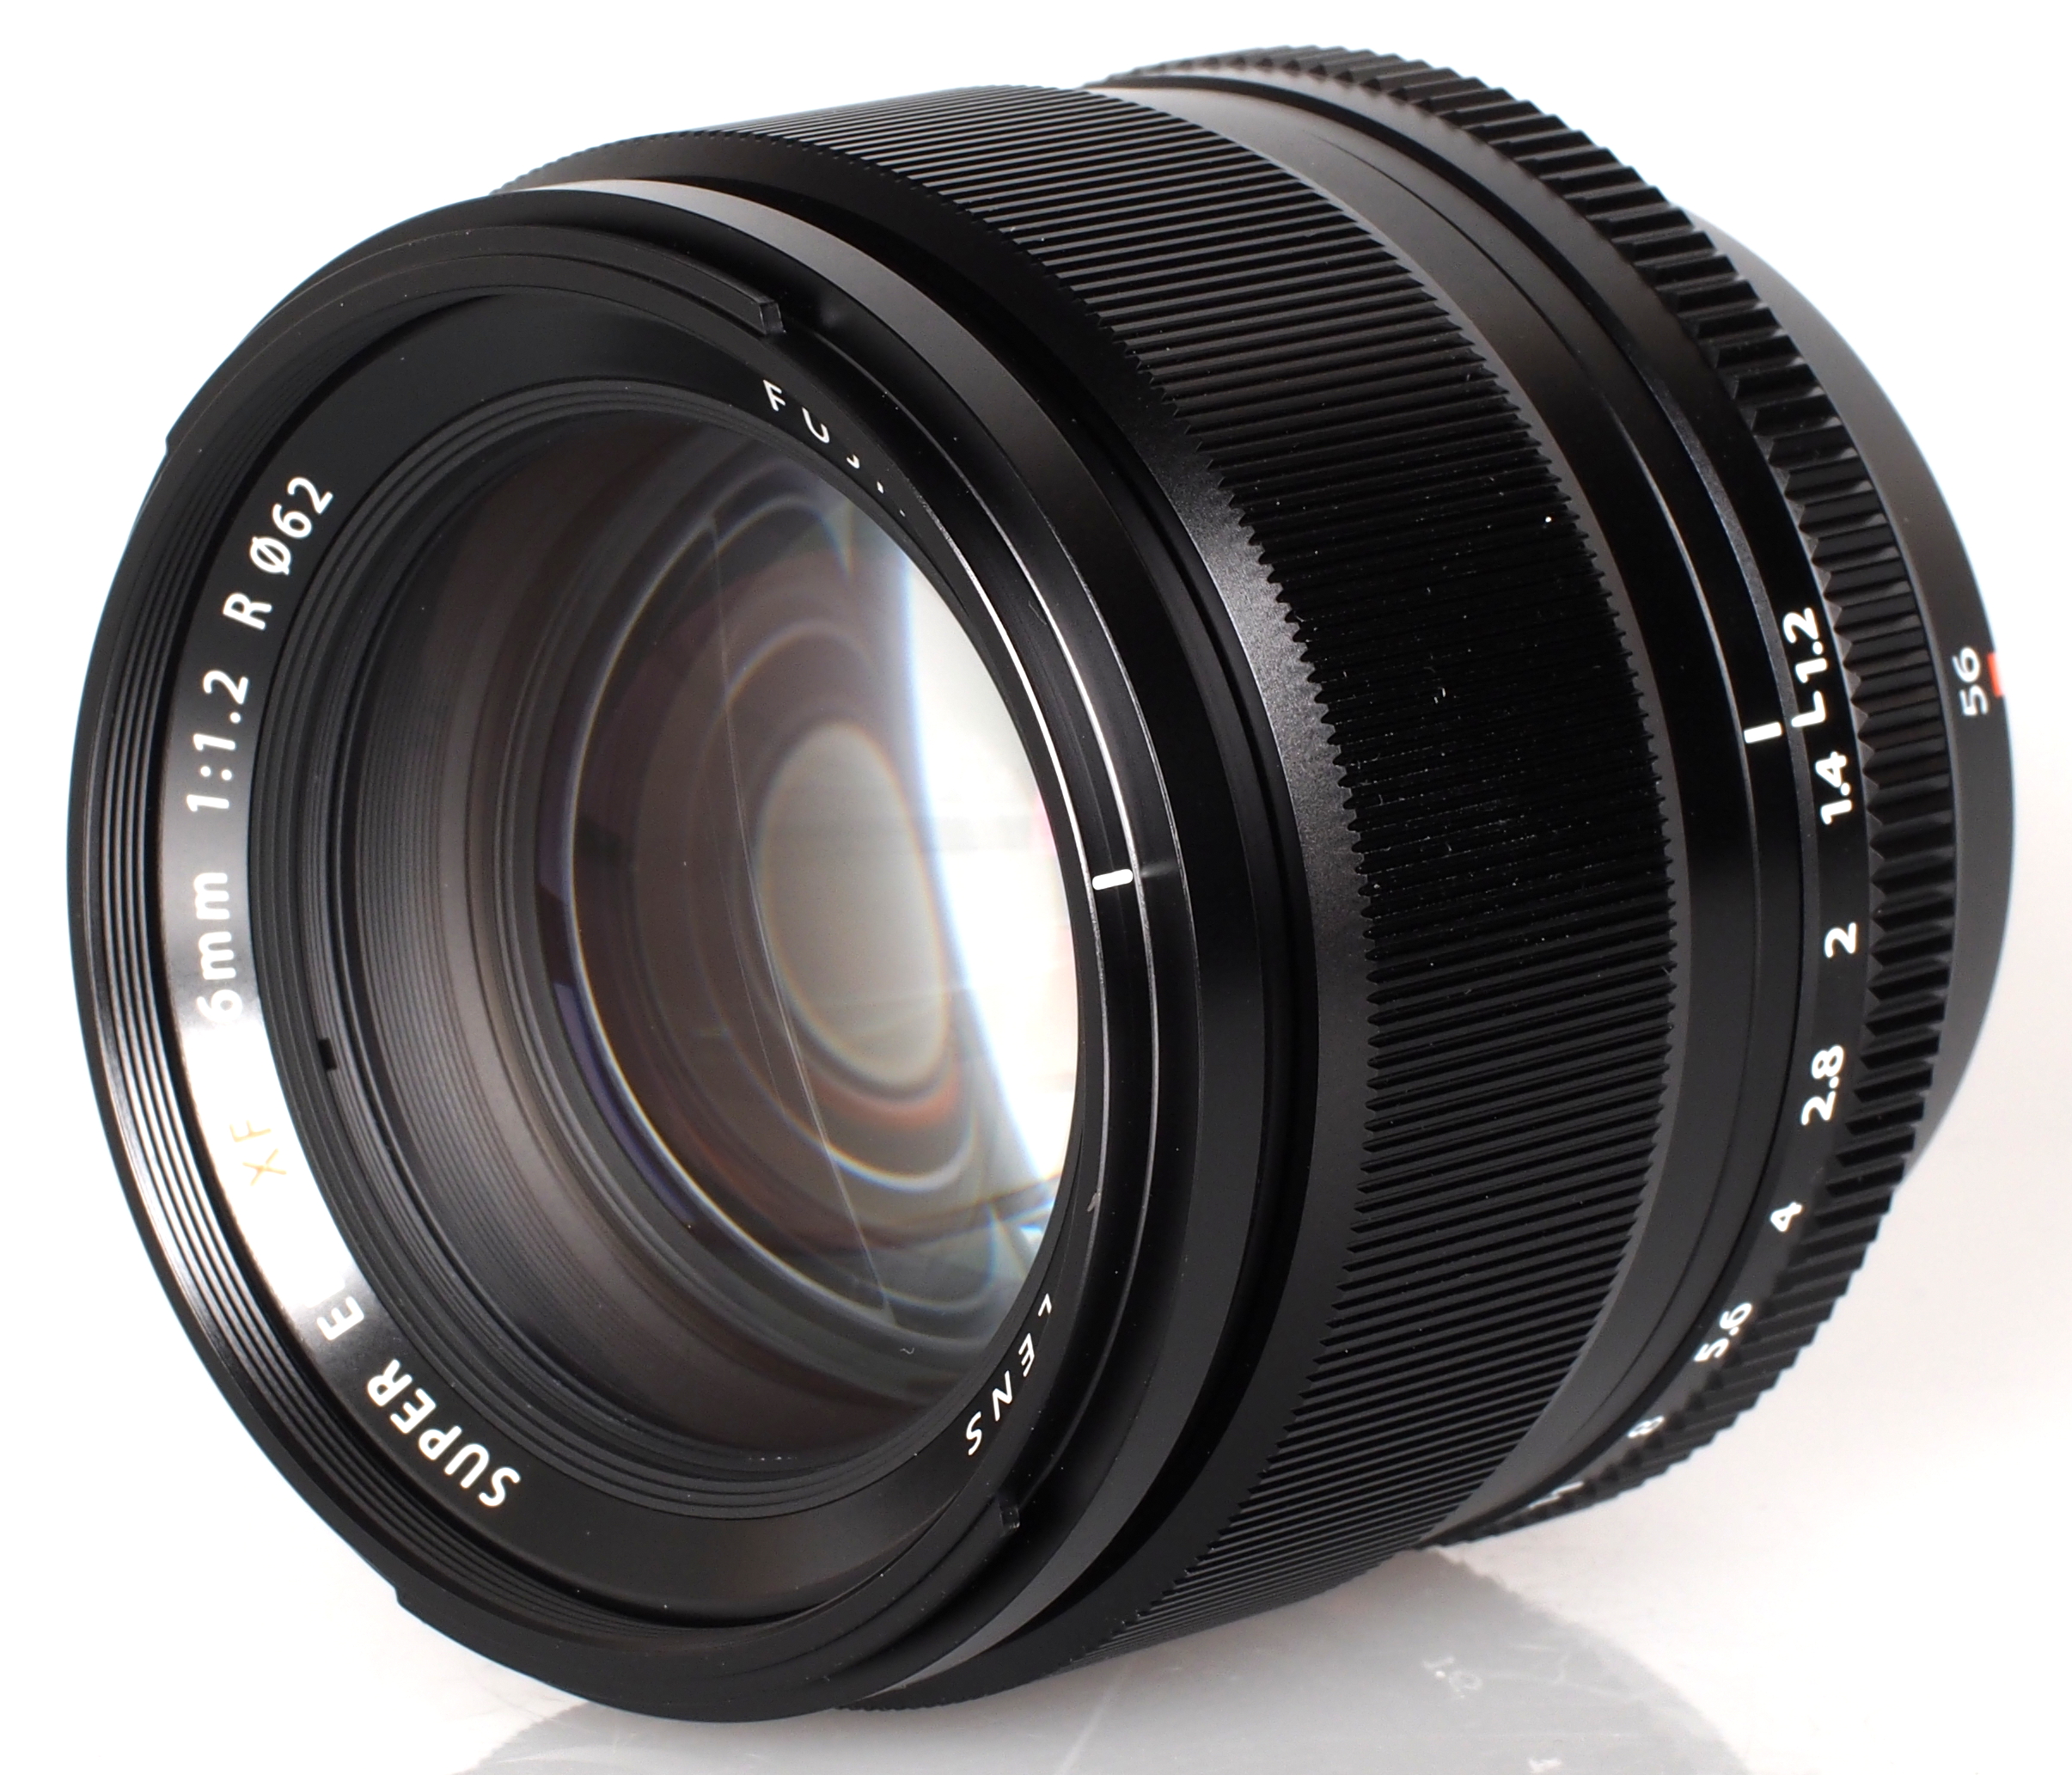 Fujifilm Fujinon XF 56mm f/1.2 R Lens Review